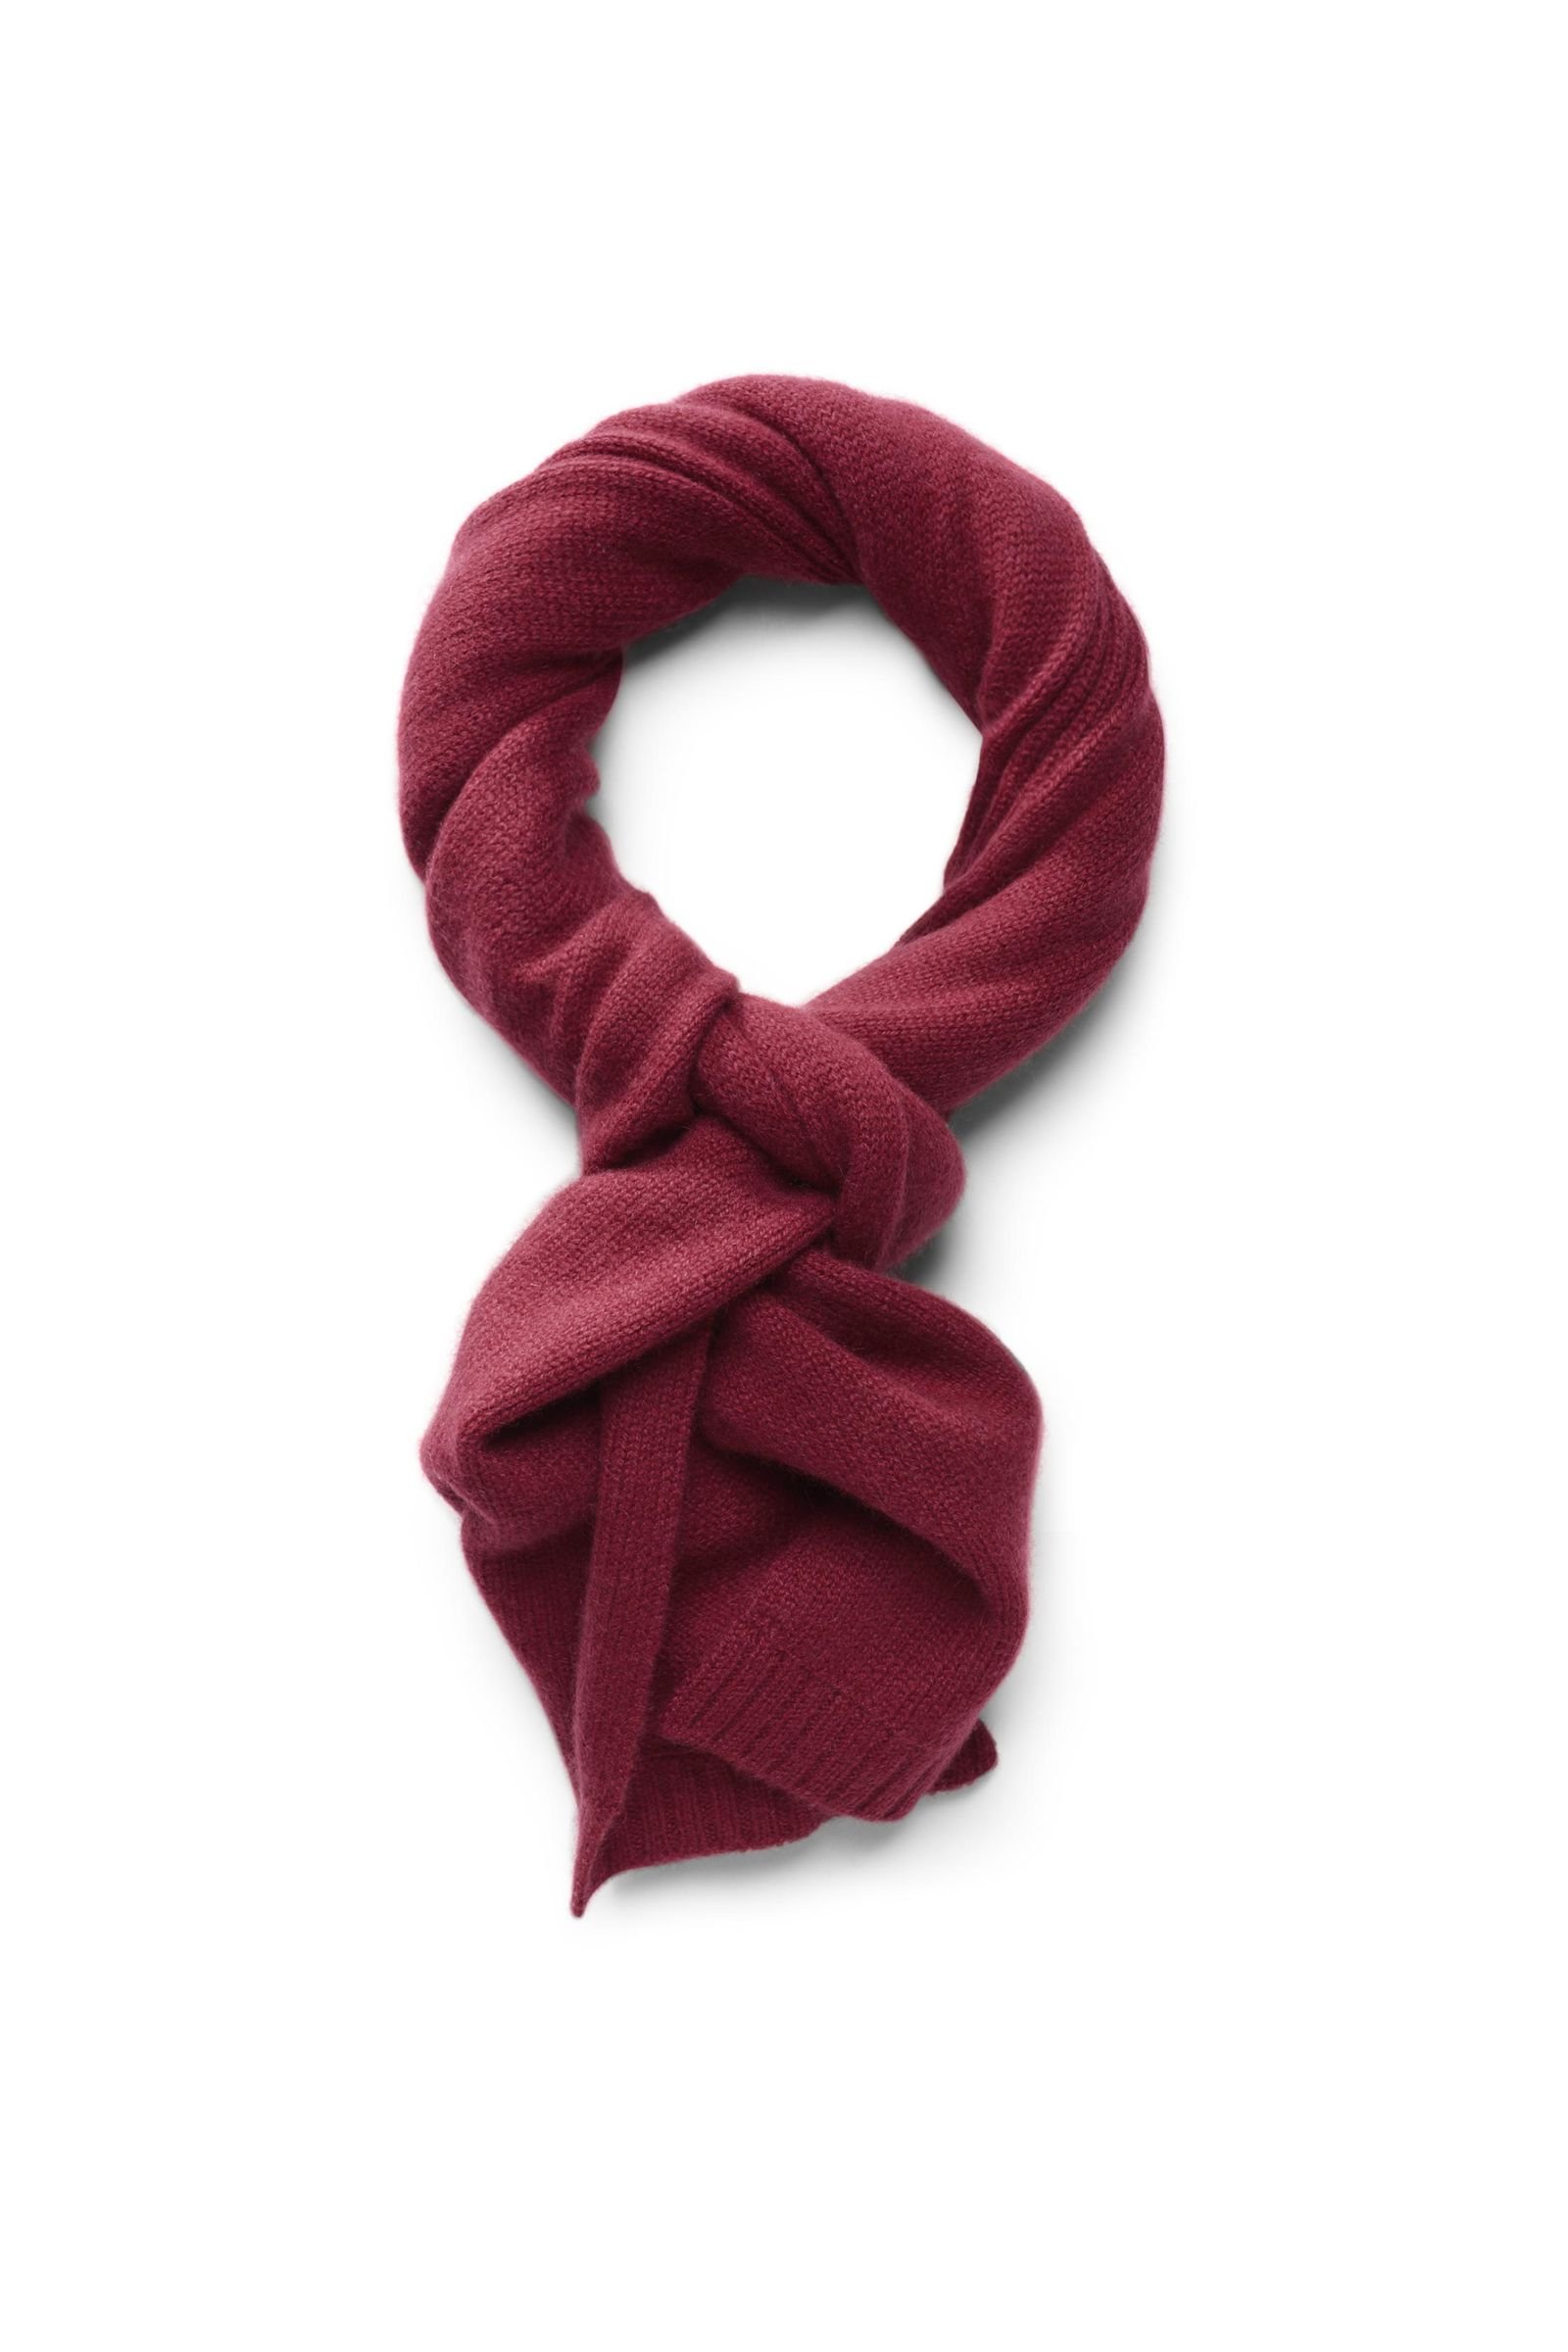 Cashmere scarf dark red